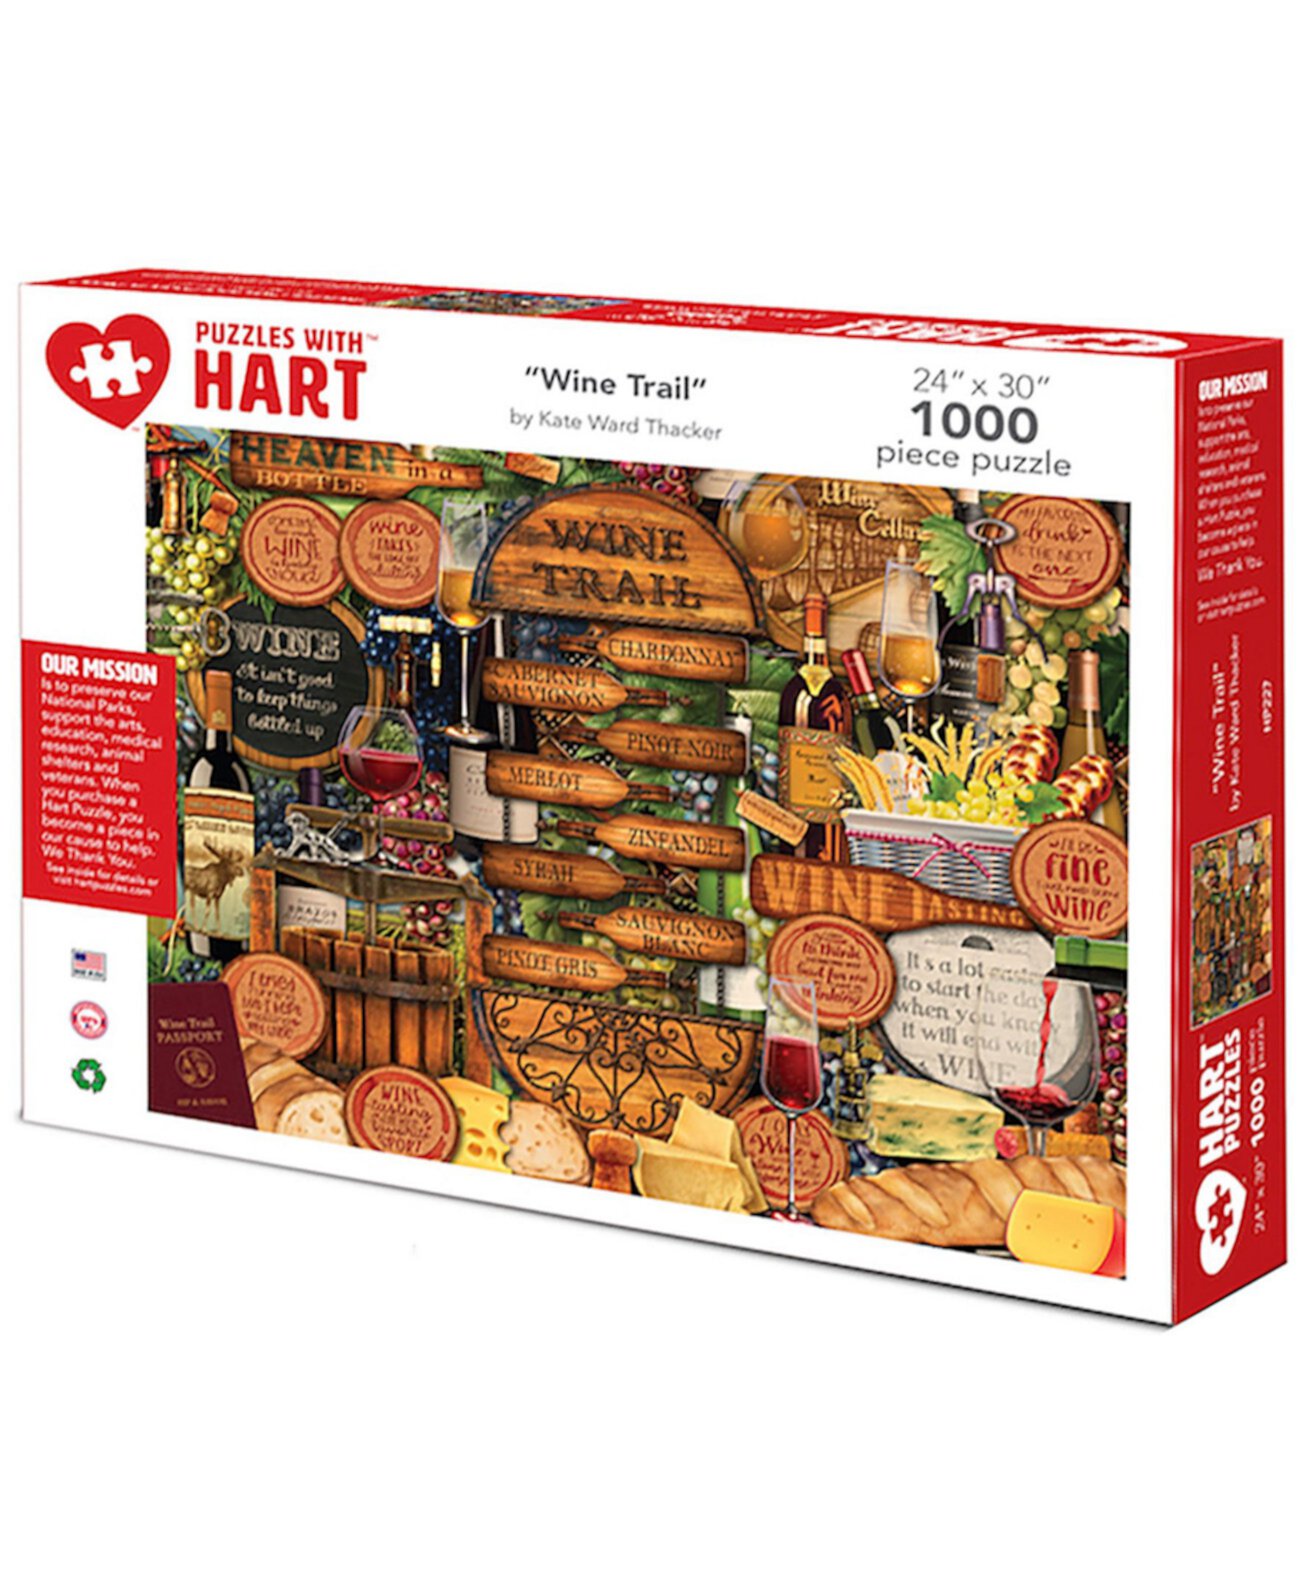 Набор Wine Trail 24 x 30 дюймов от Кейт Уорд Такер, 1000 предметов Hart Puzzles